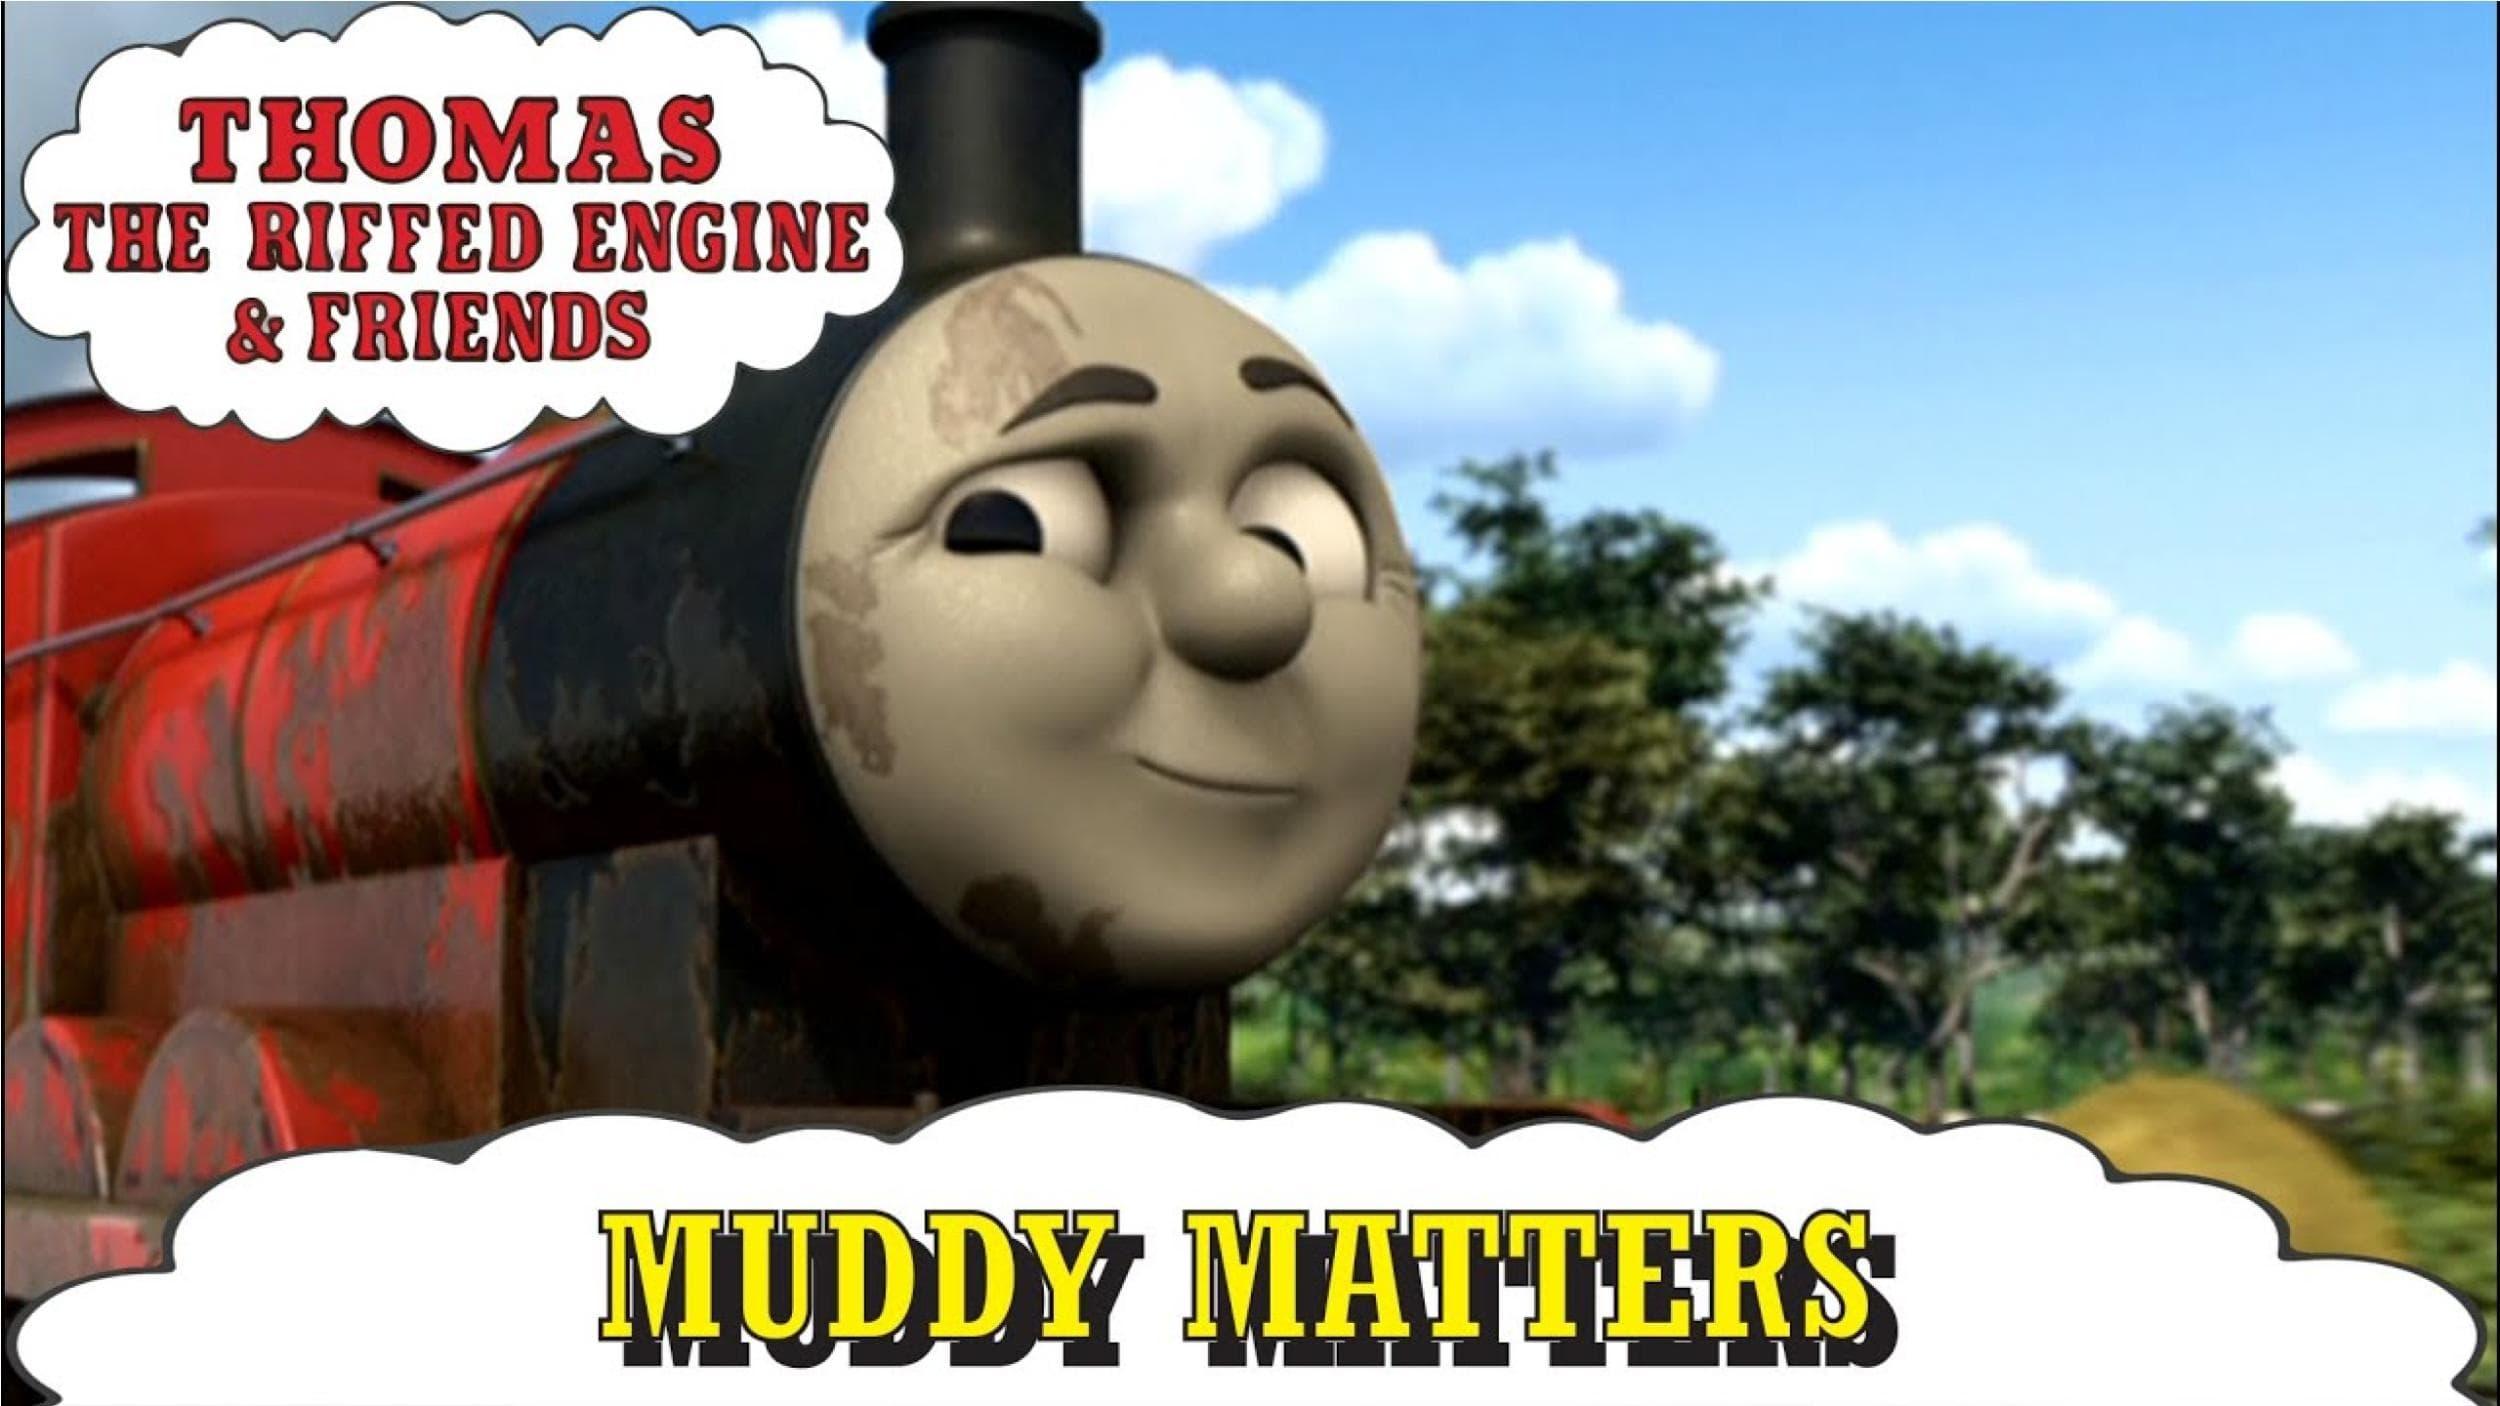 Thomas & Friends: Muddy Matters backdrop